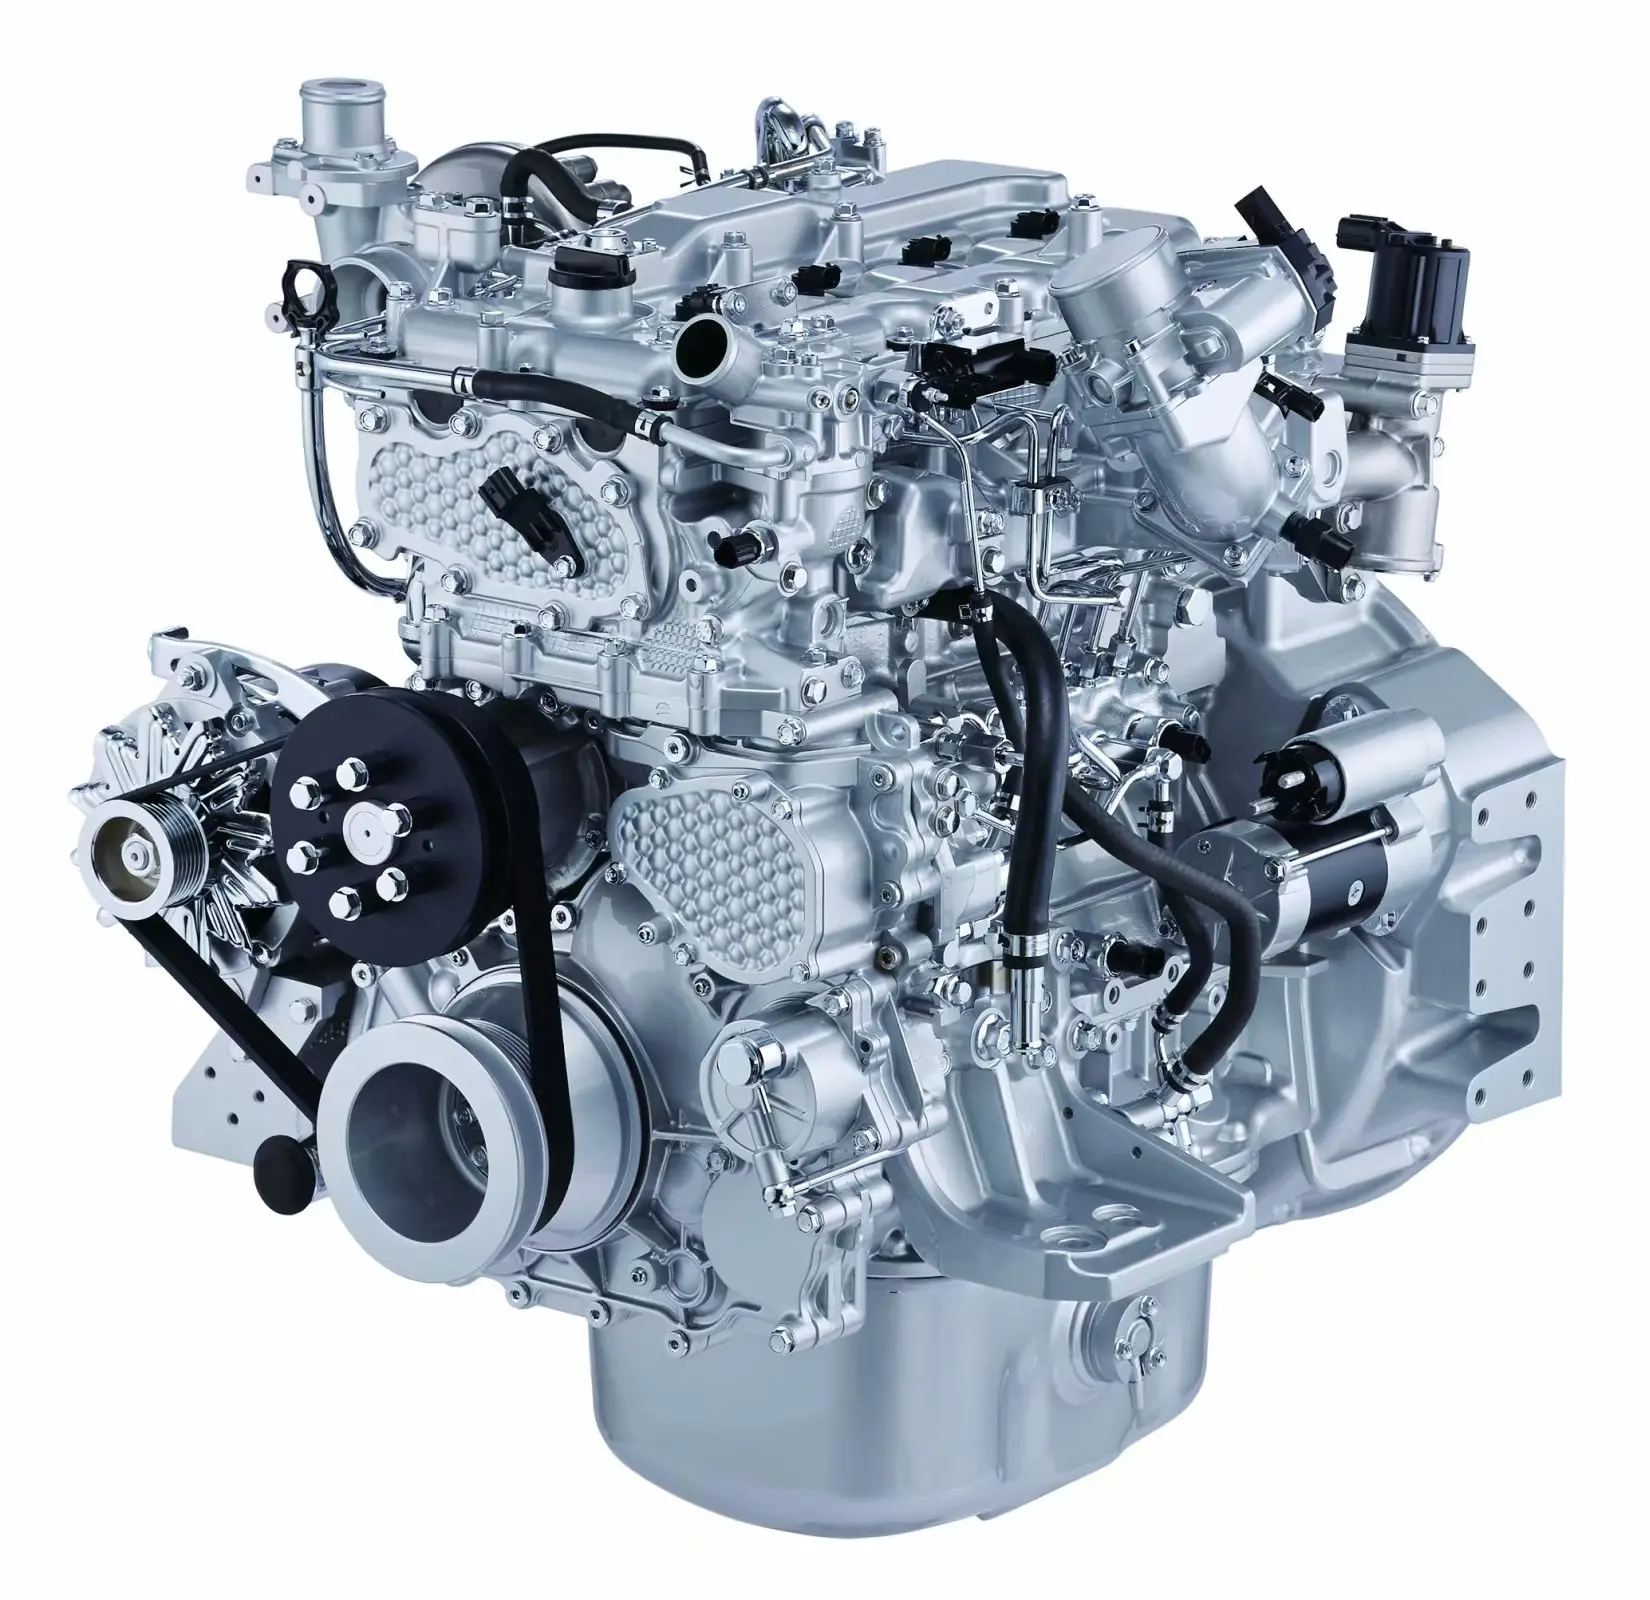 ISUZU 4 JJ1 Dieselmotor 4 Zylinder 4 Stoke für CASE/SUMITOMO CX210 CX220